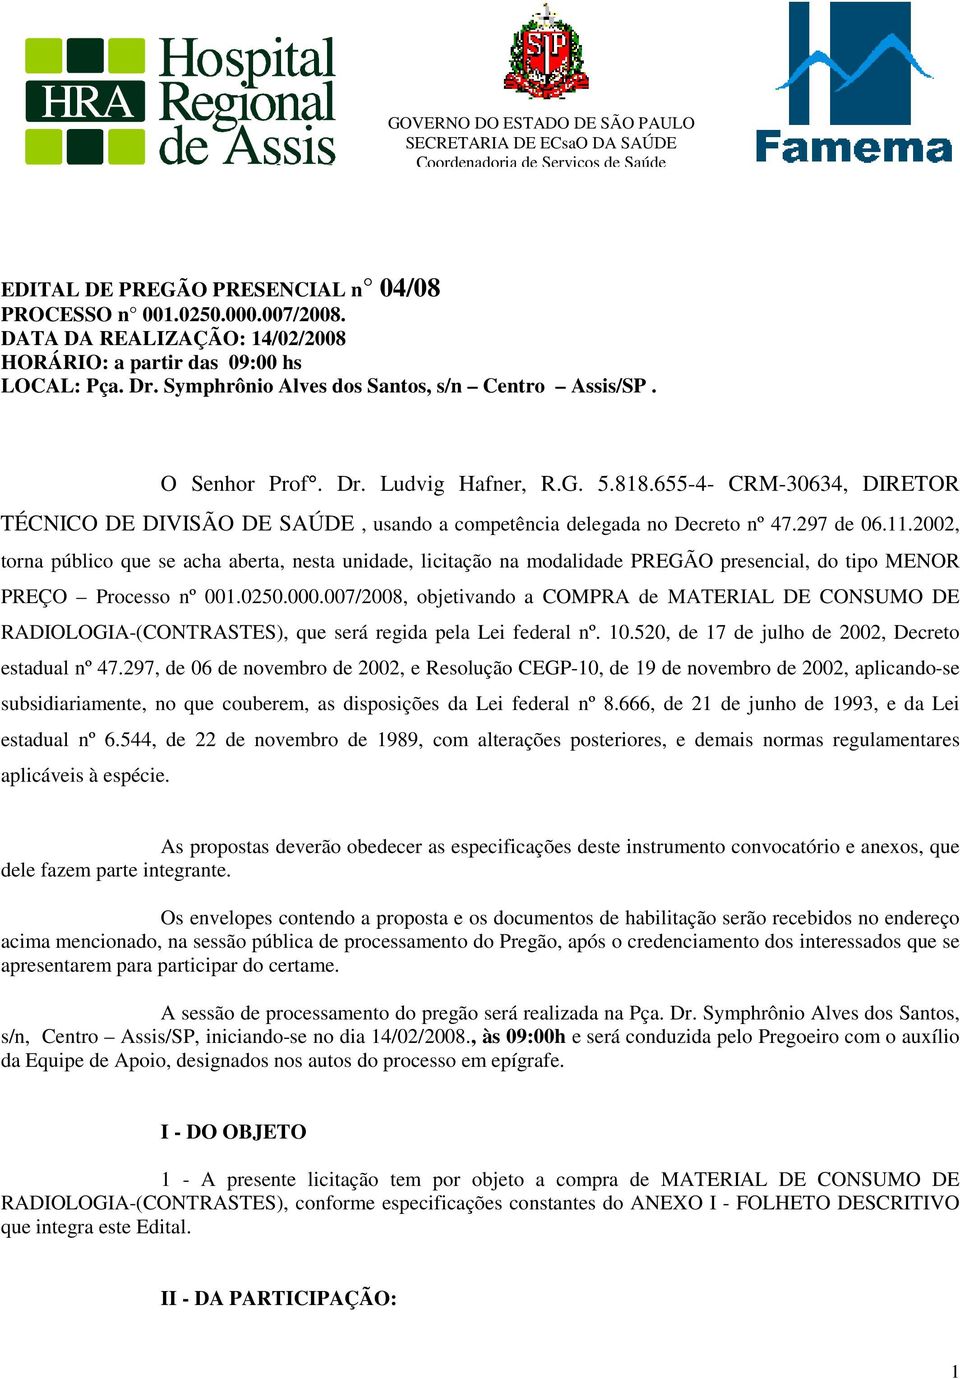 655-4- CRM-30634, DIRETOR TÉCNICO DE DIVISÃO DE SAÚDE, usando a competência delegada no Decreto nº 47.297 de 06.11.